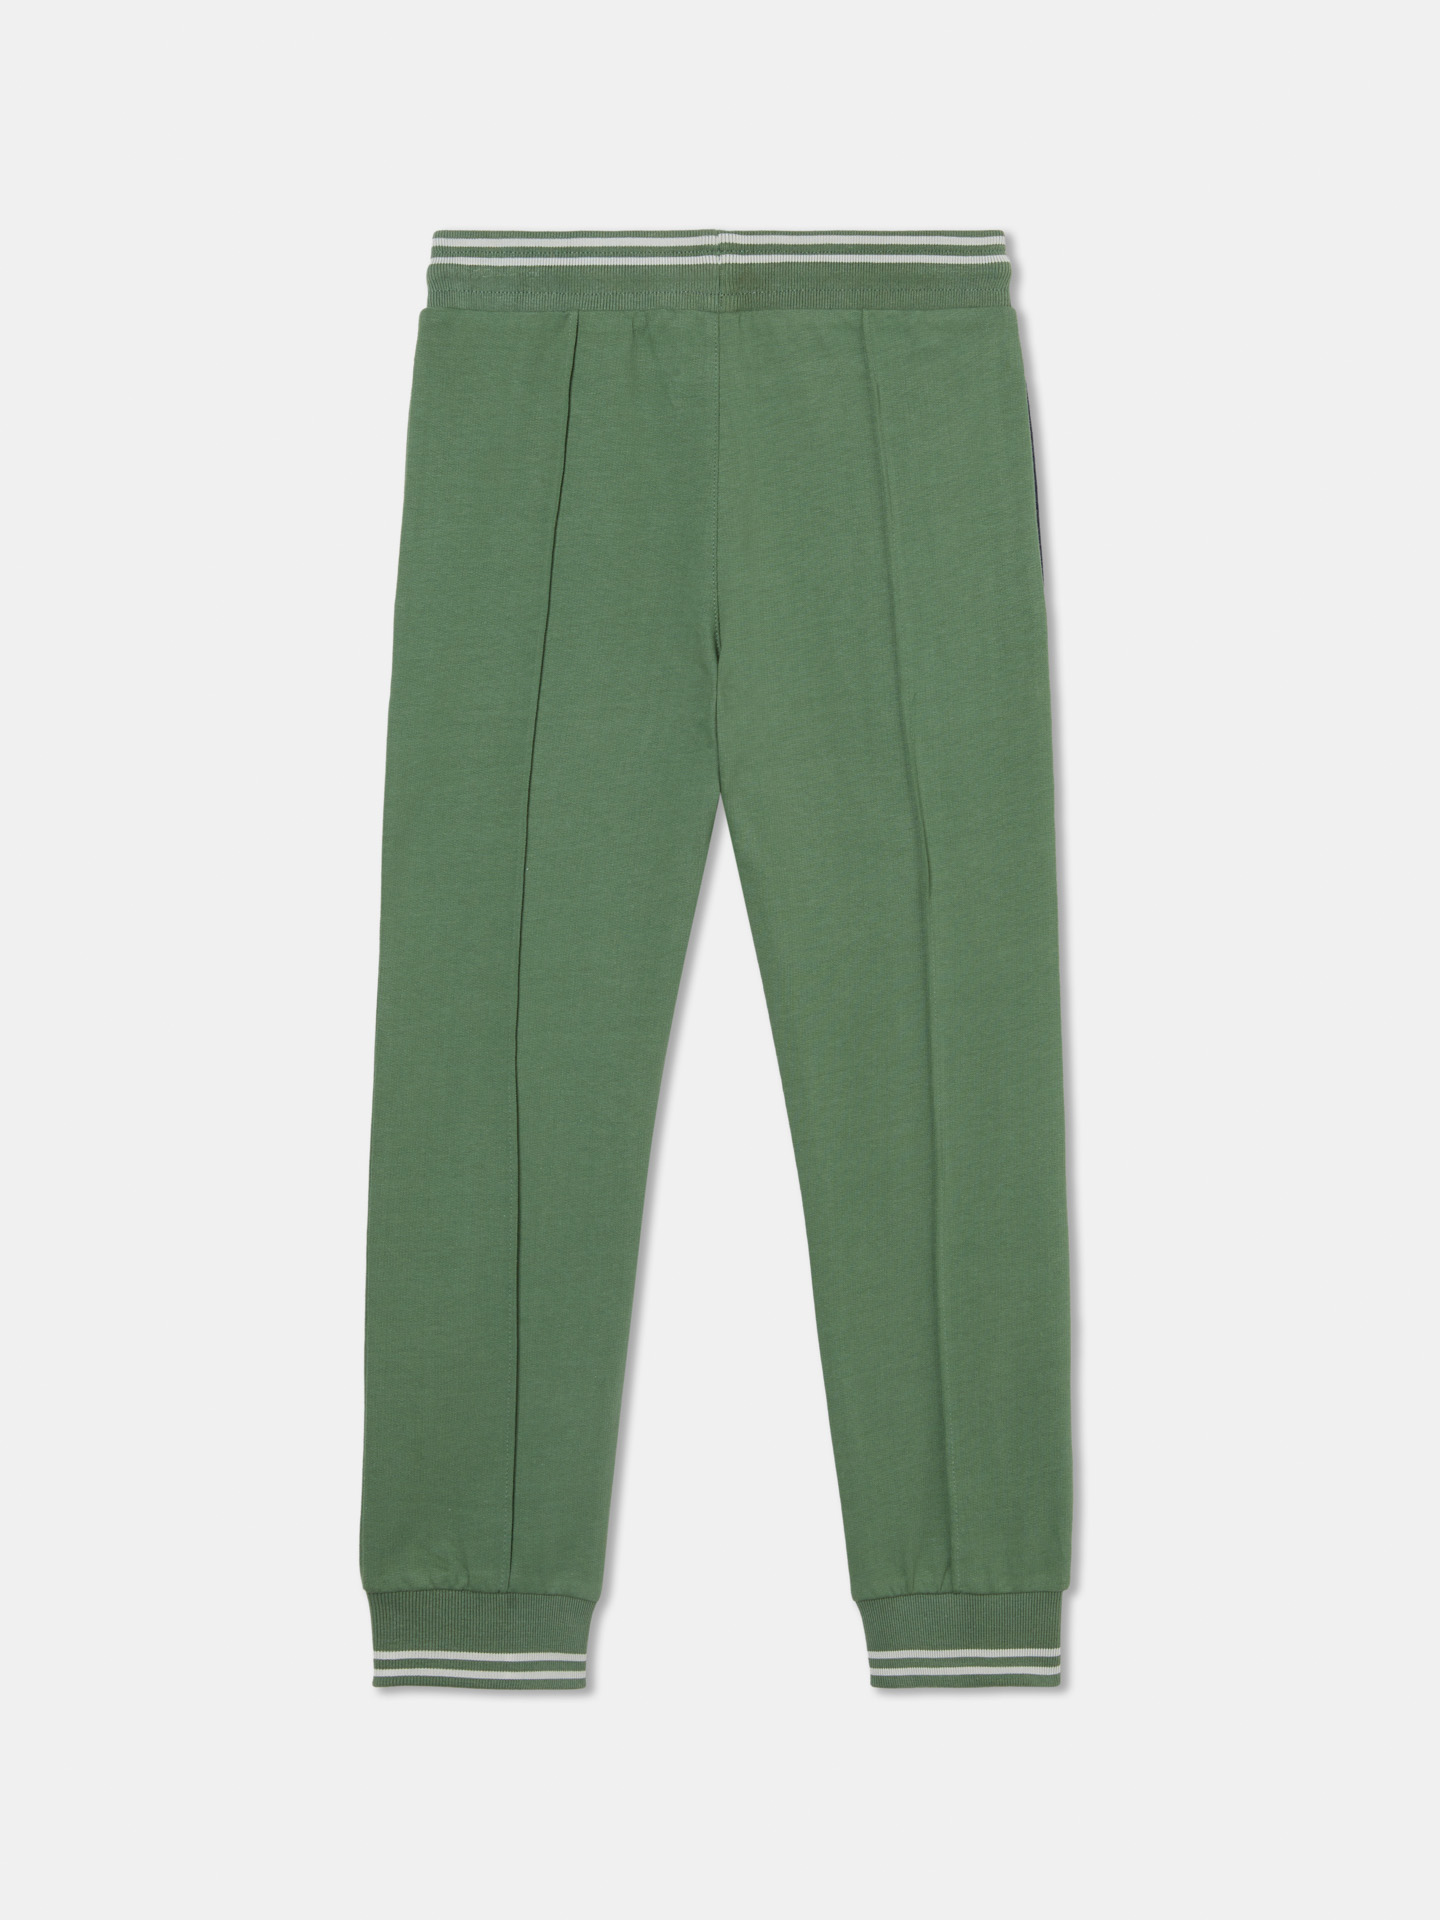 Sportswear Trousers Green Casual Boy